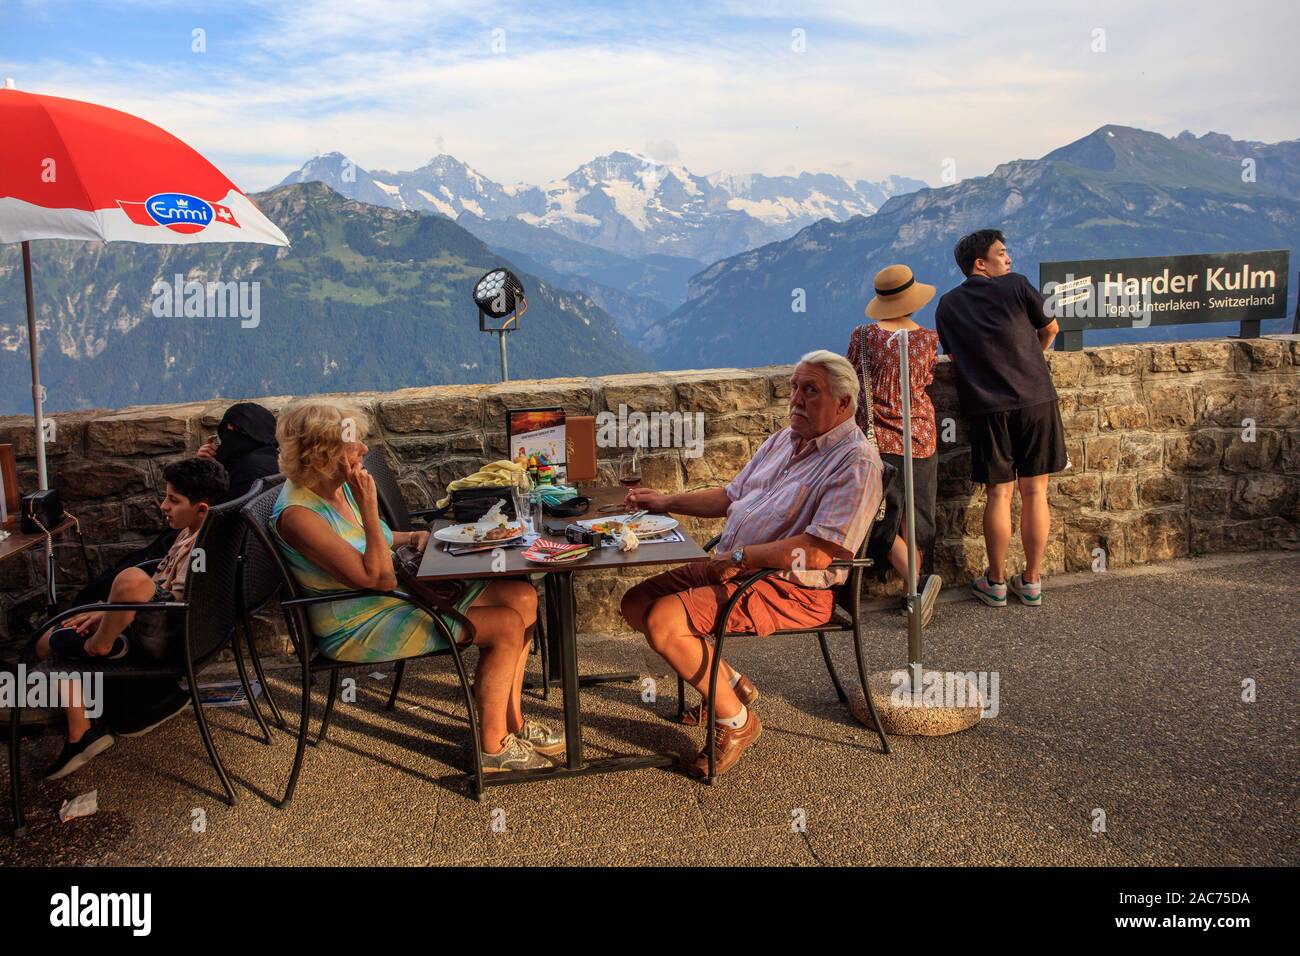 Una coppia cena al ristorante Harder Kulm, Interlaken, Svizzera Foto Stock